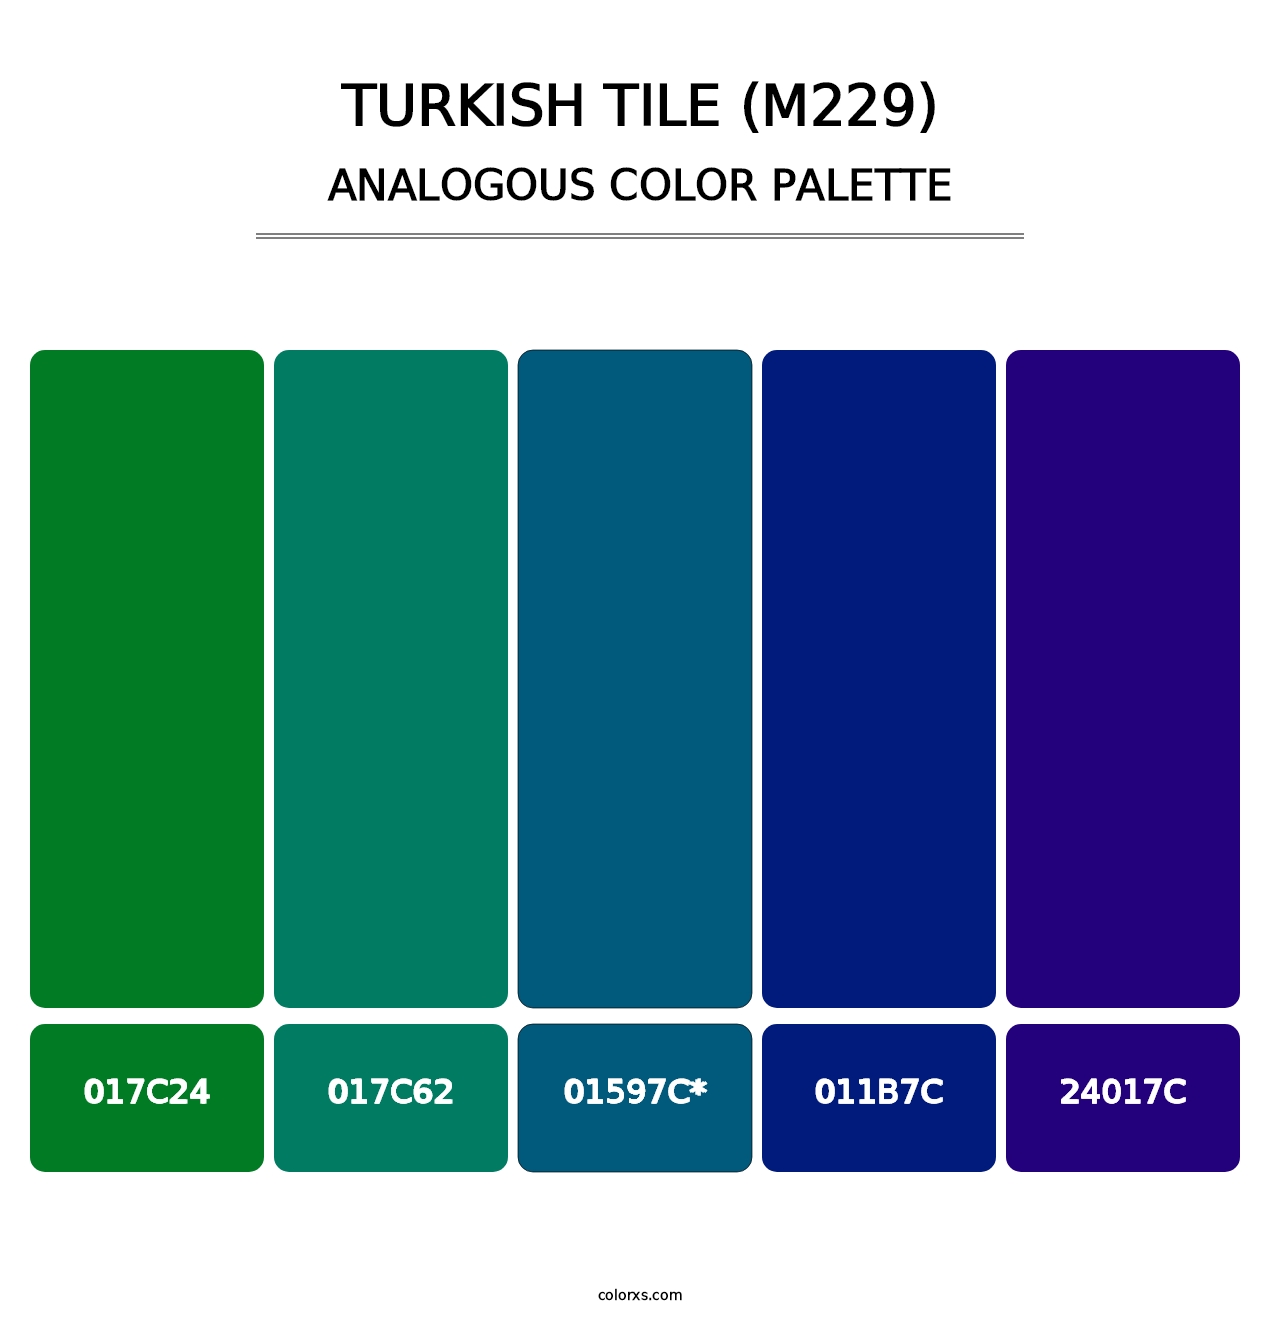 Turkish Tile (M229) - Analogous Color Palette